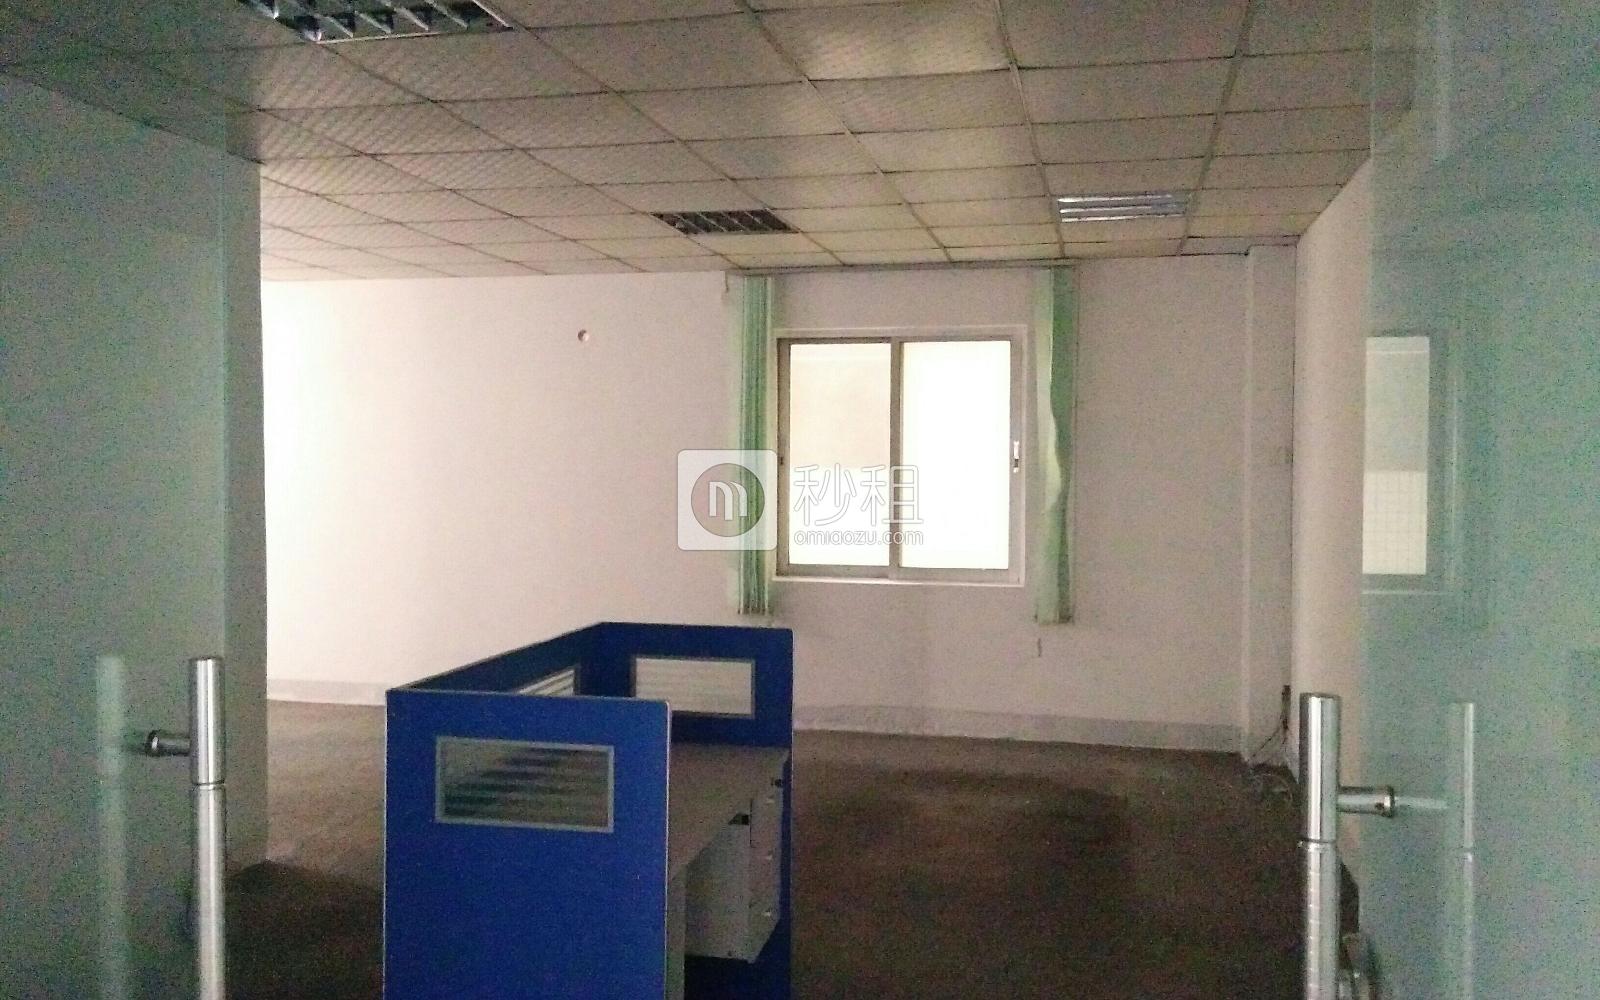 润臻商务楼 写字楼出租85平米简装办公室45元/m².月